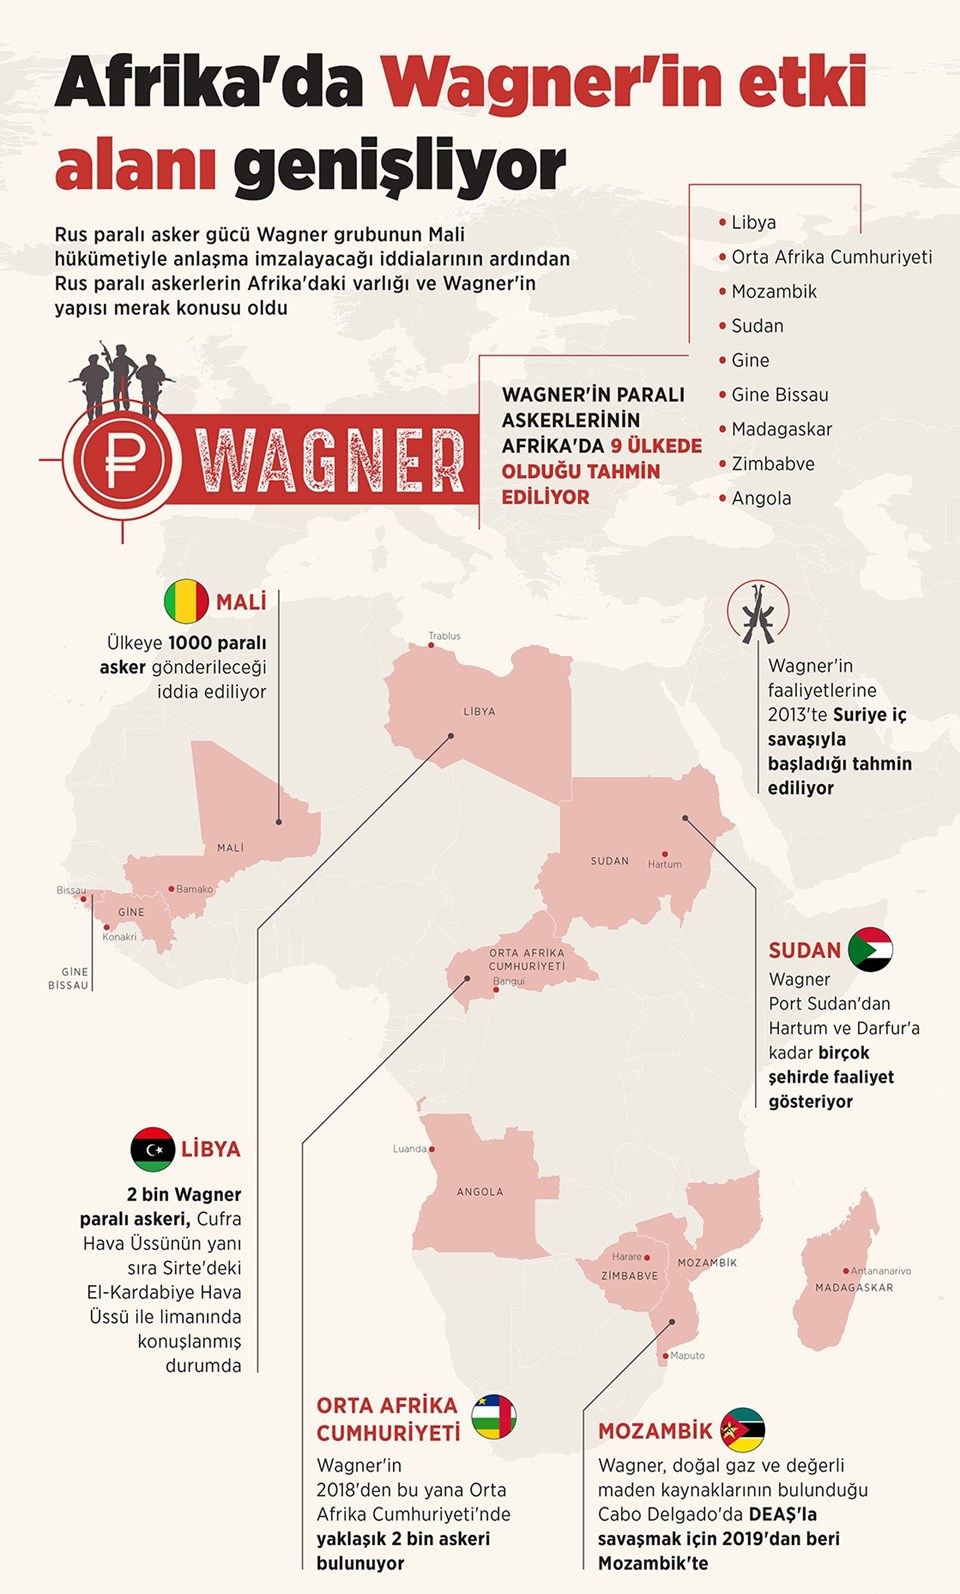 Gönüllülerden oluştuğu iddia edilen Wagner, Suriye ve Libya başta olmak üzere birçok ülkede faaliyet gösteriyor.